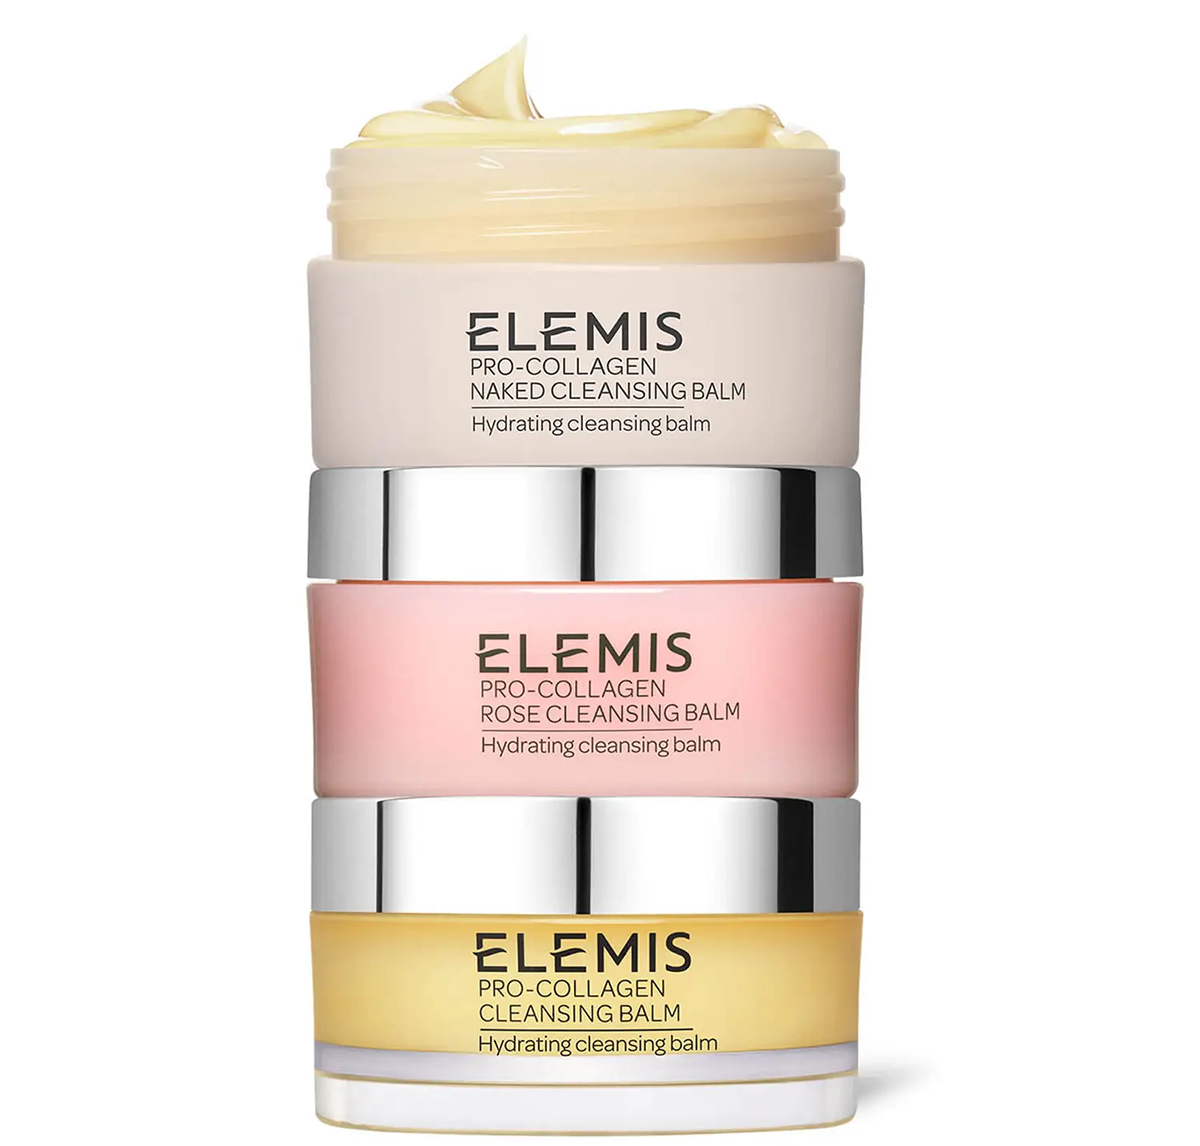 21% off Elemis The Pro-Collagen Cleansing Trio